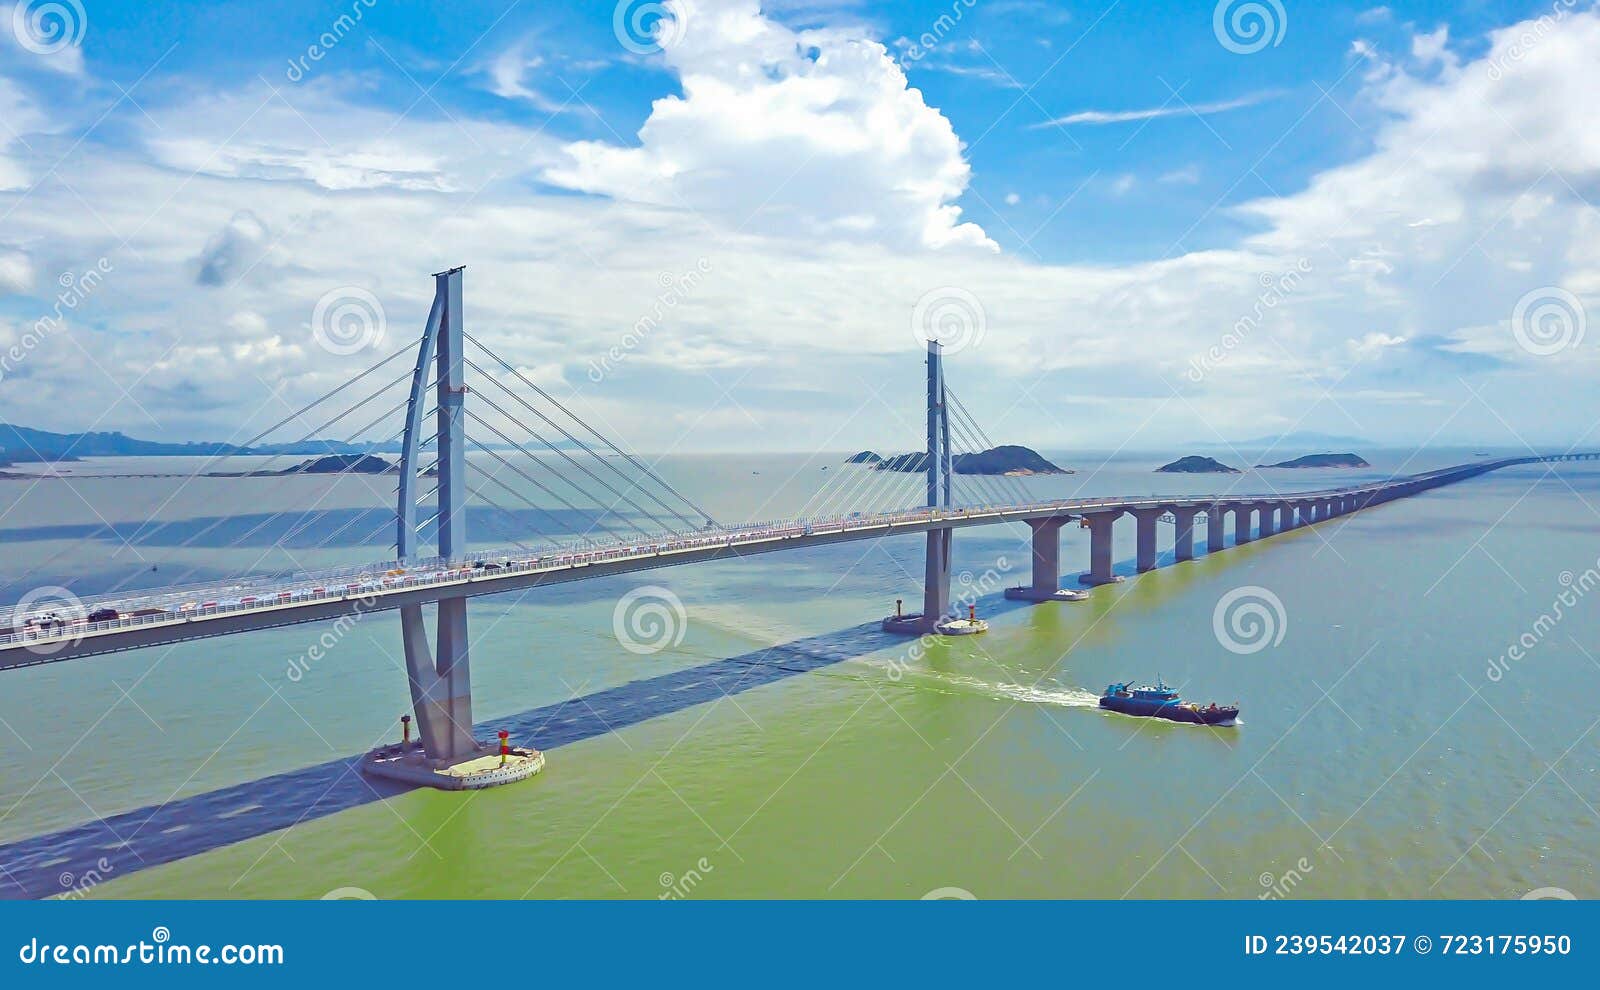 crossing the hong kong-zhuhai-macao bridge